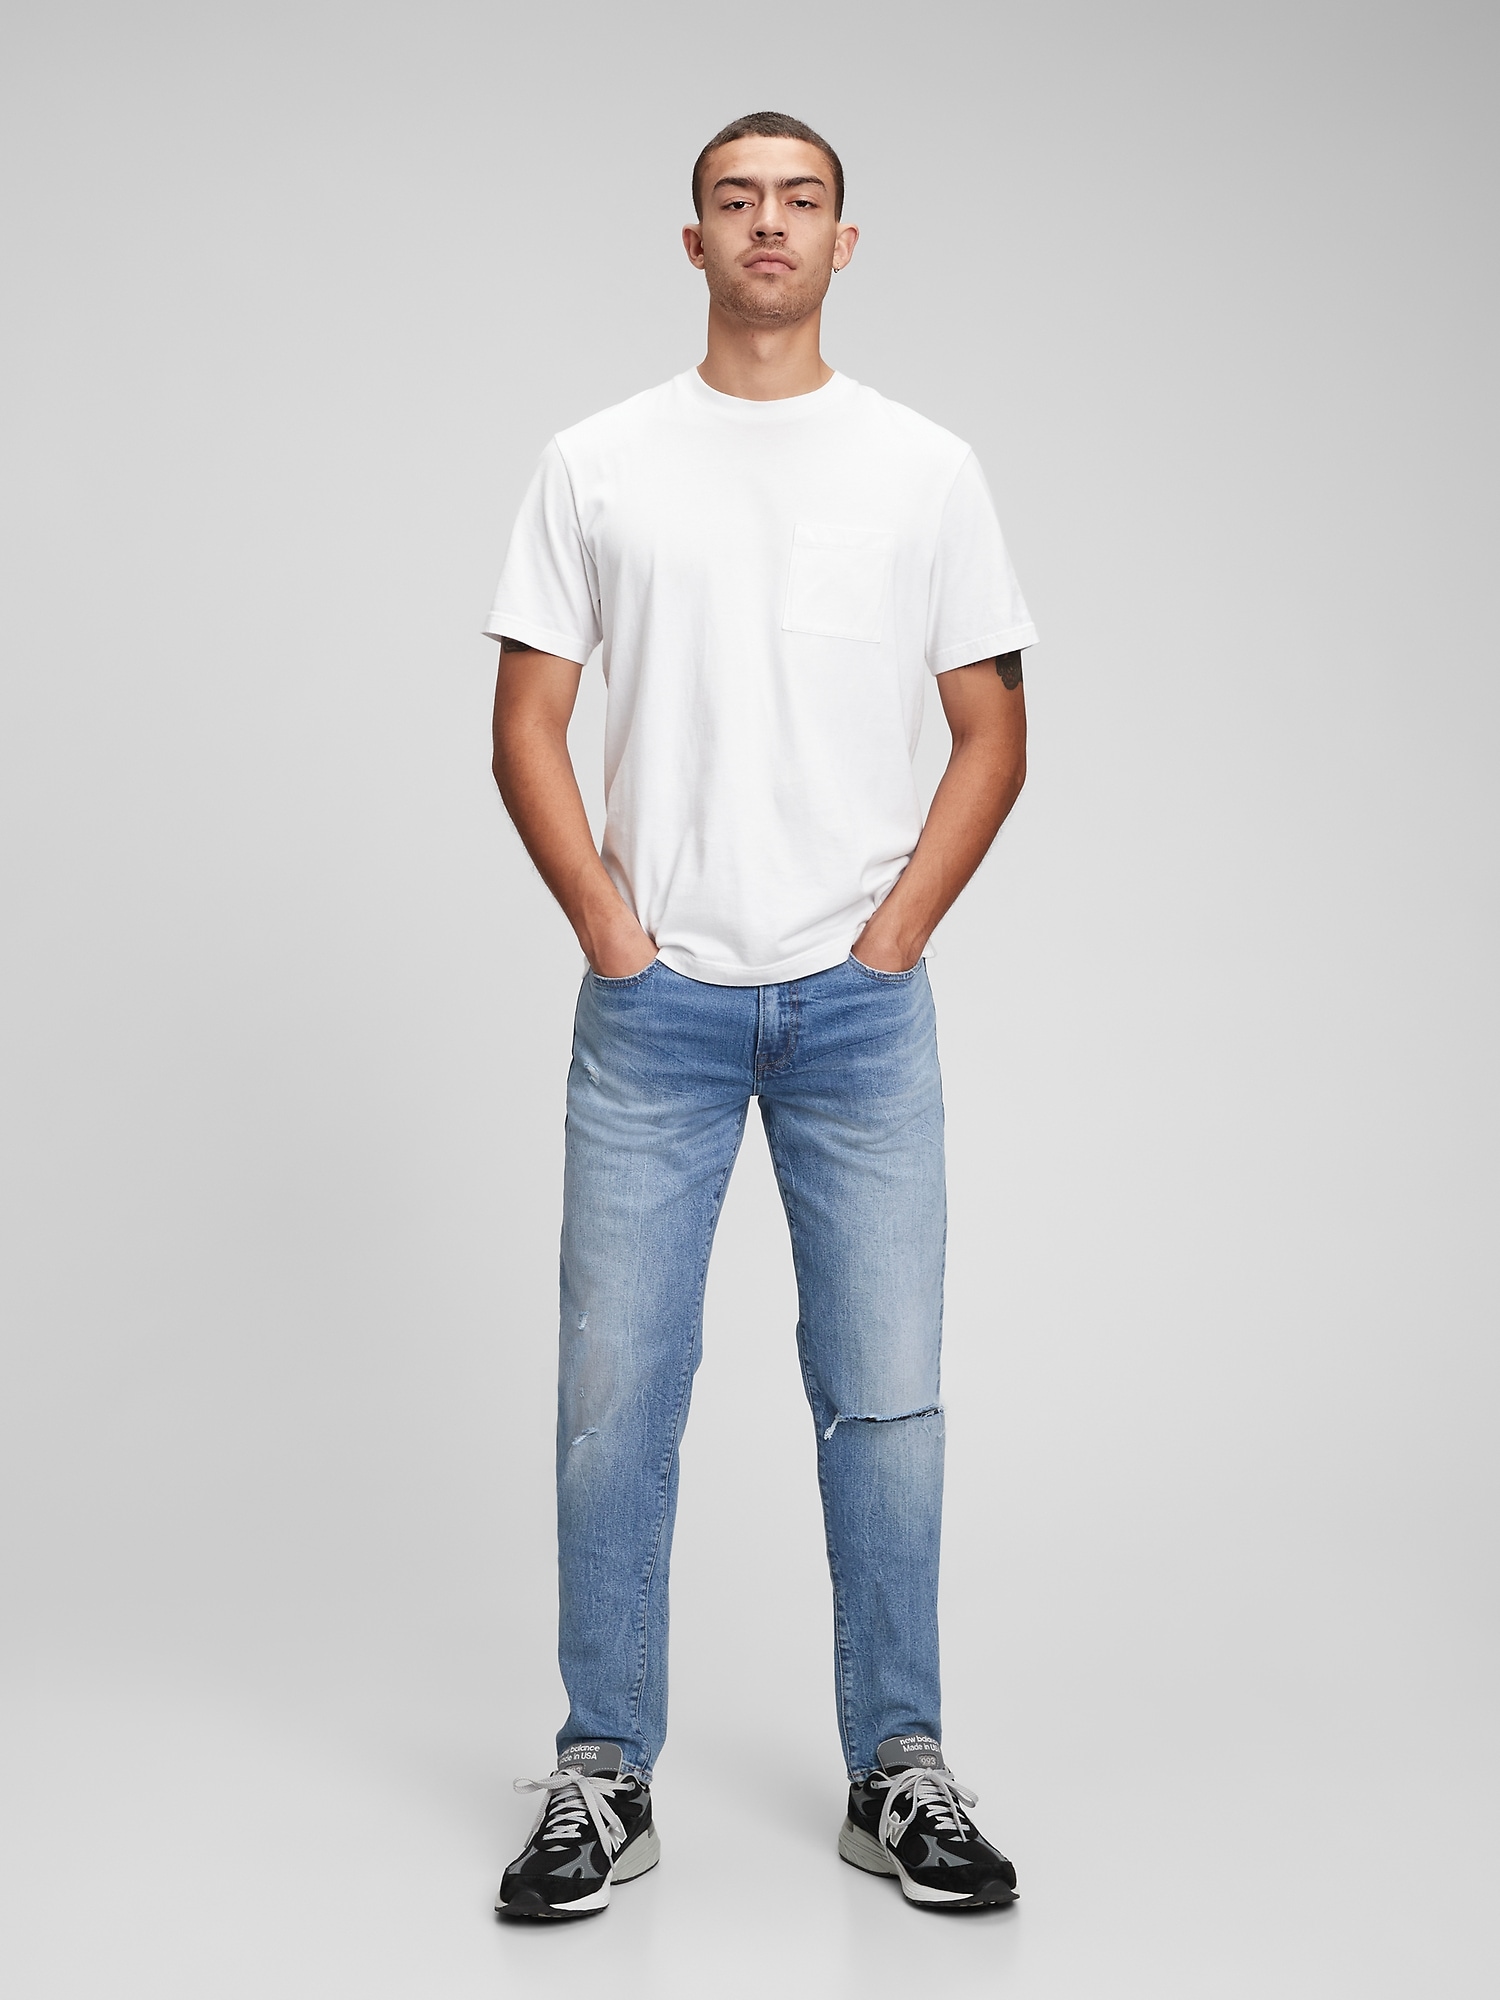 Gap Jeans for Men, Slim & Straight Jeans